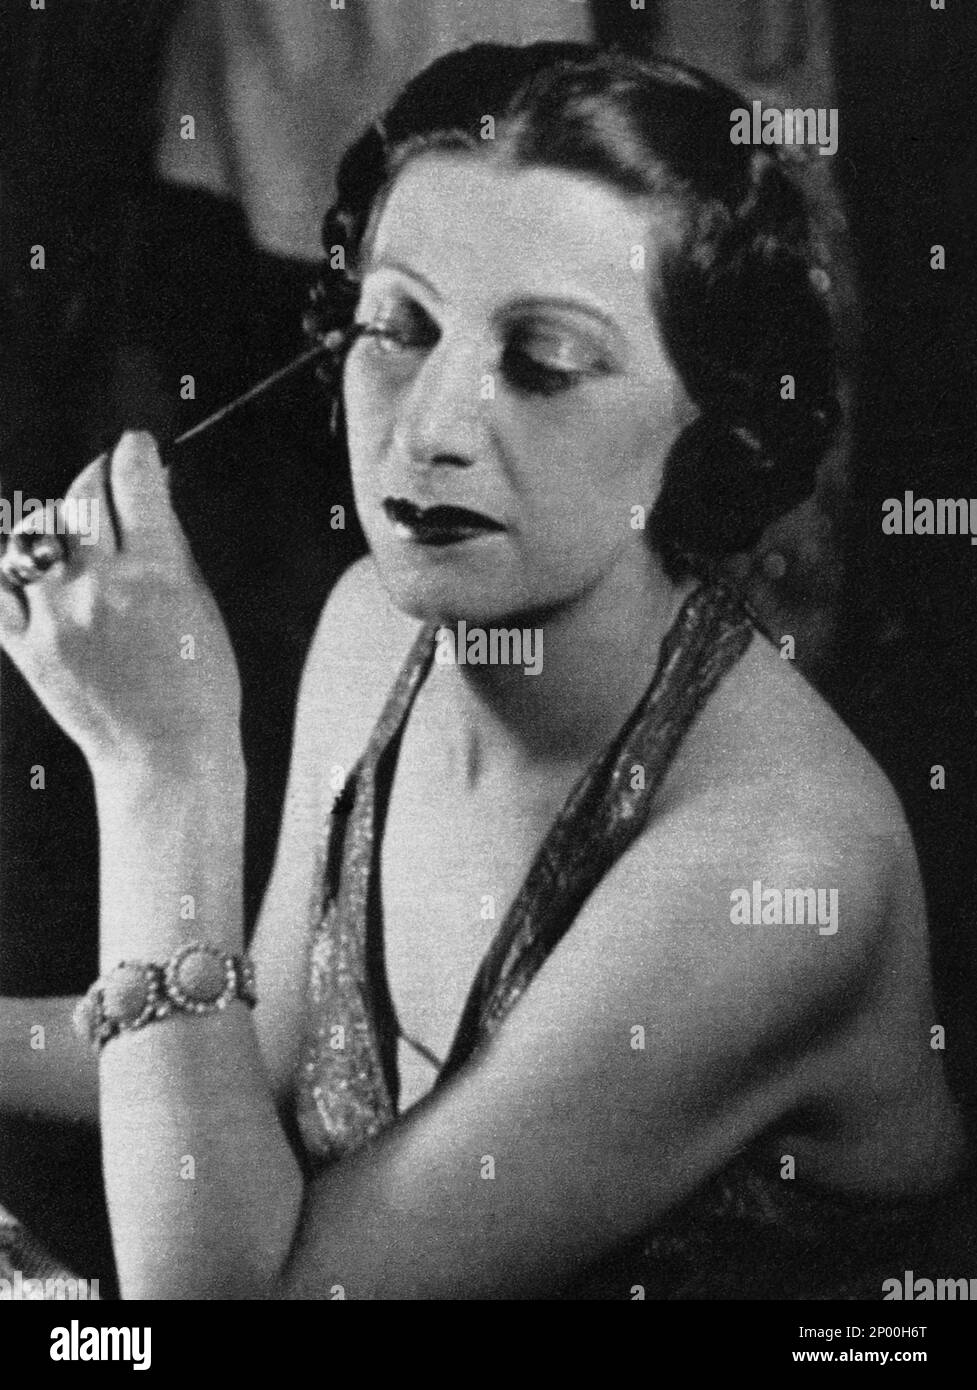 1930's : The italian theatre and movie actress TINA LATTANZI ( Alatri 15 february 1902 - Roma 25 october 1997 ), the voice of Greta Garbo , Joan Crafword and Marlene Dietrich in the italian editions of Hollywood movies  - TEATRO - THEATER - portrait - ritratto - CINEMA   - ANNI TRENTA - 30's - '30 - trucco - make-up - make up - camerino - bracelet - braccialetto - anello - anelli rings - jewels - jewellery - gioielli - gioiello - DOPPIAGGIO - DOPPIATORE - DOPPIATRICE  ----  Archivio GBB Stock Photo